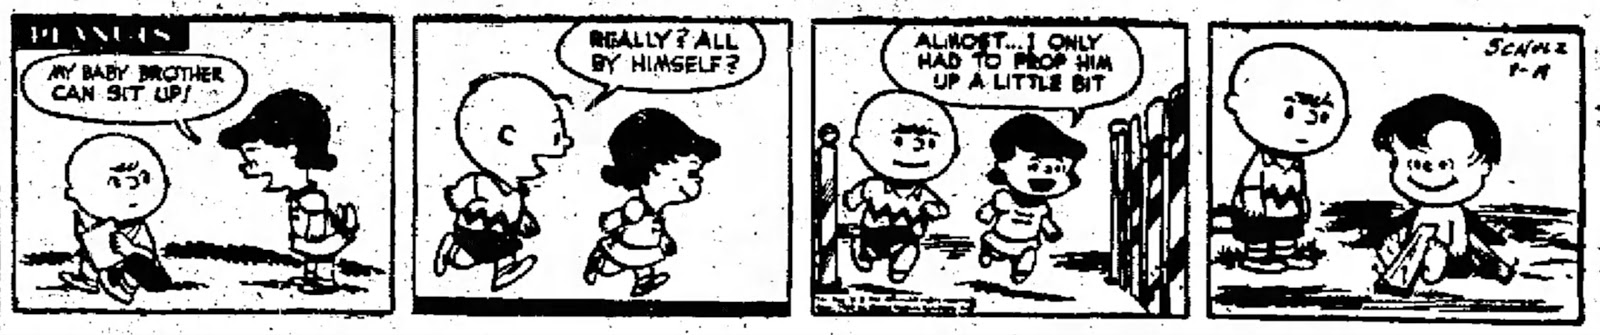 1952-09-19 - Peanuts - First Linus Appearance.jpg